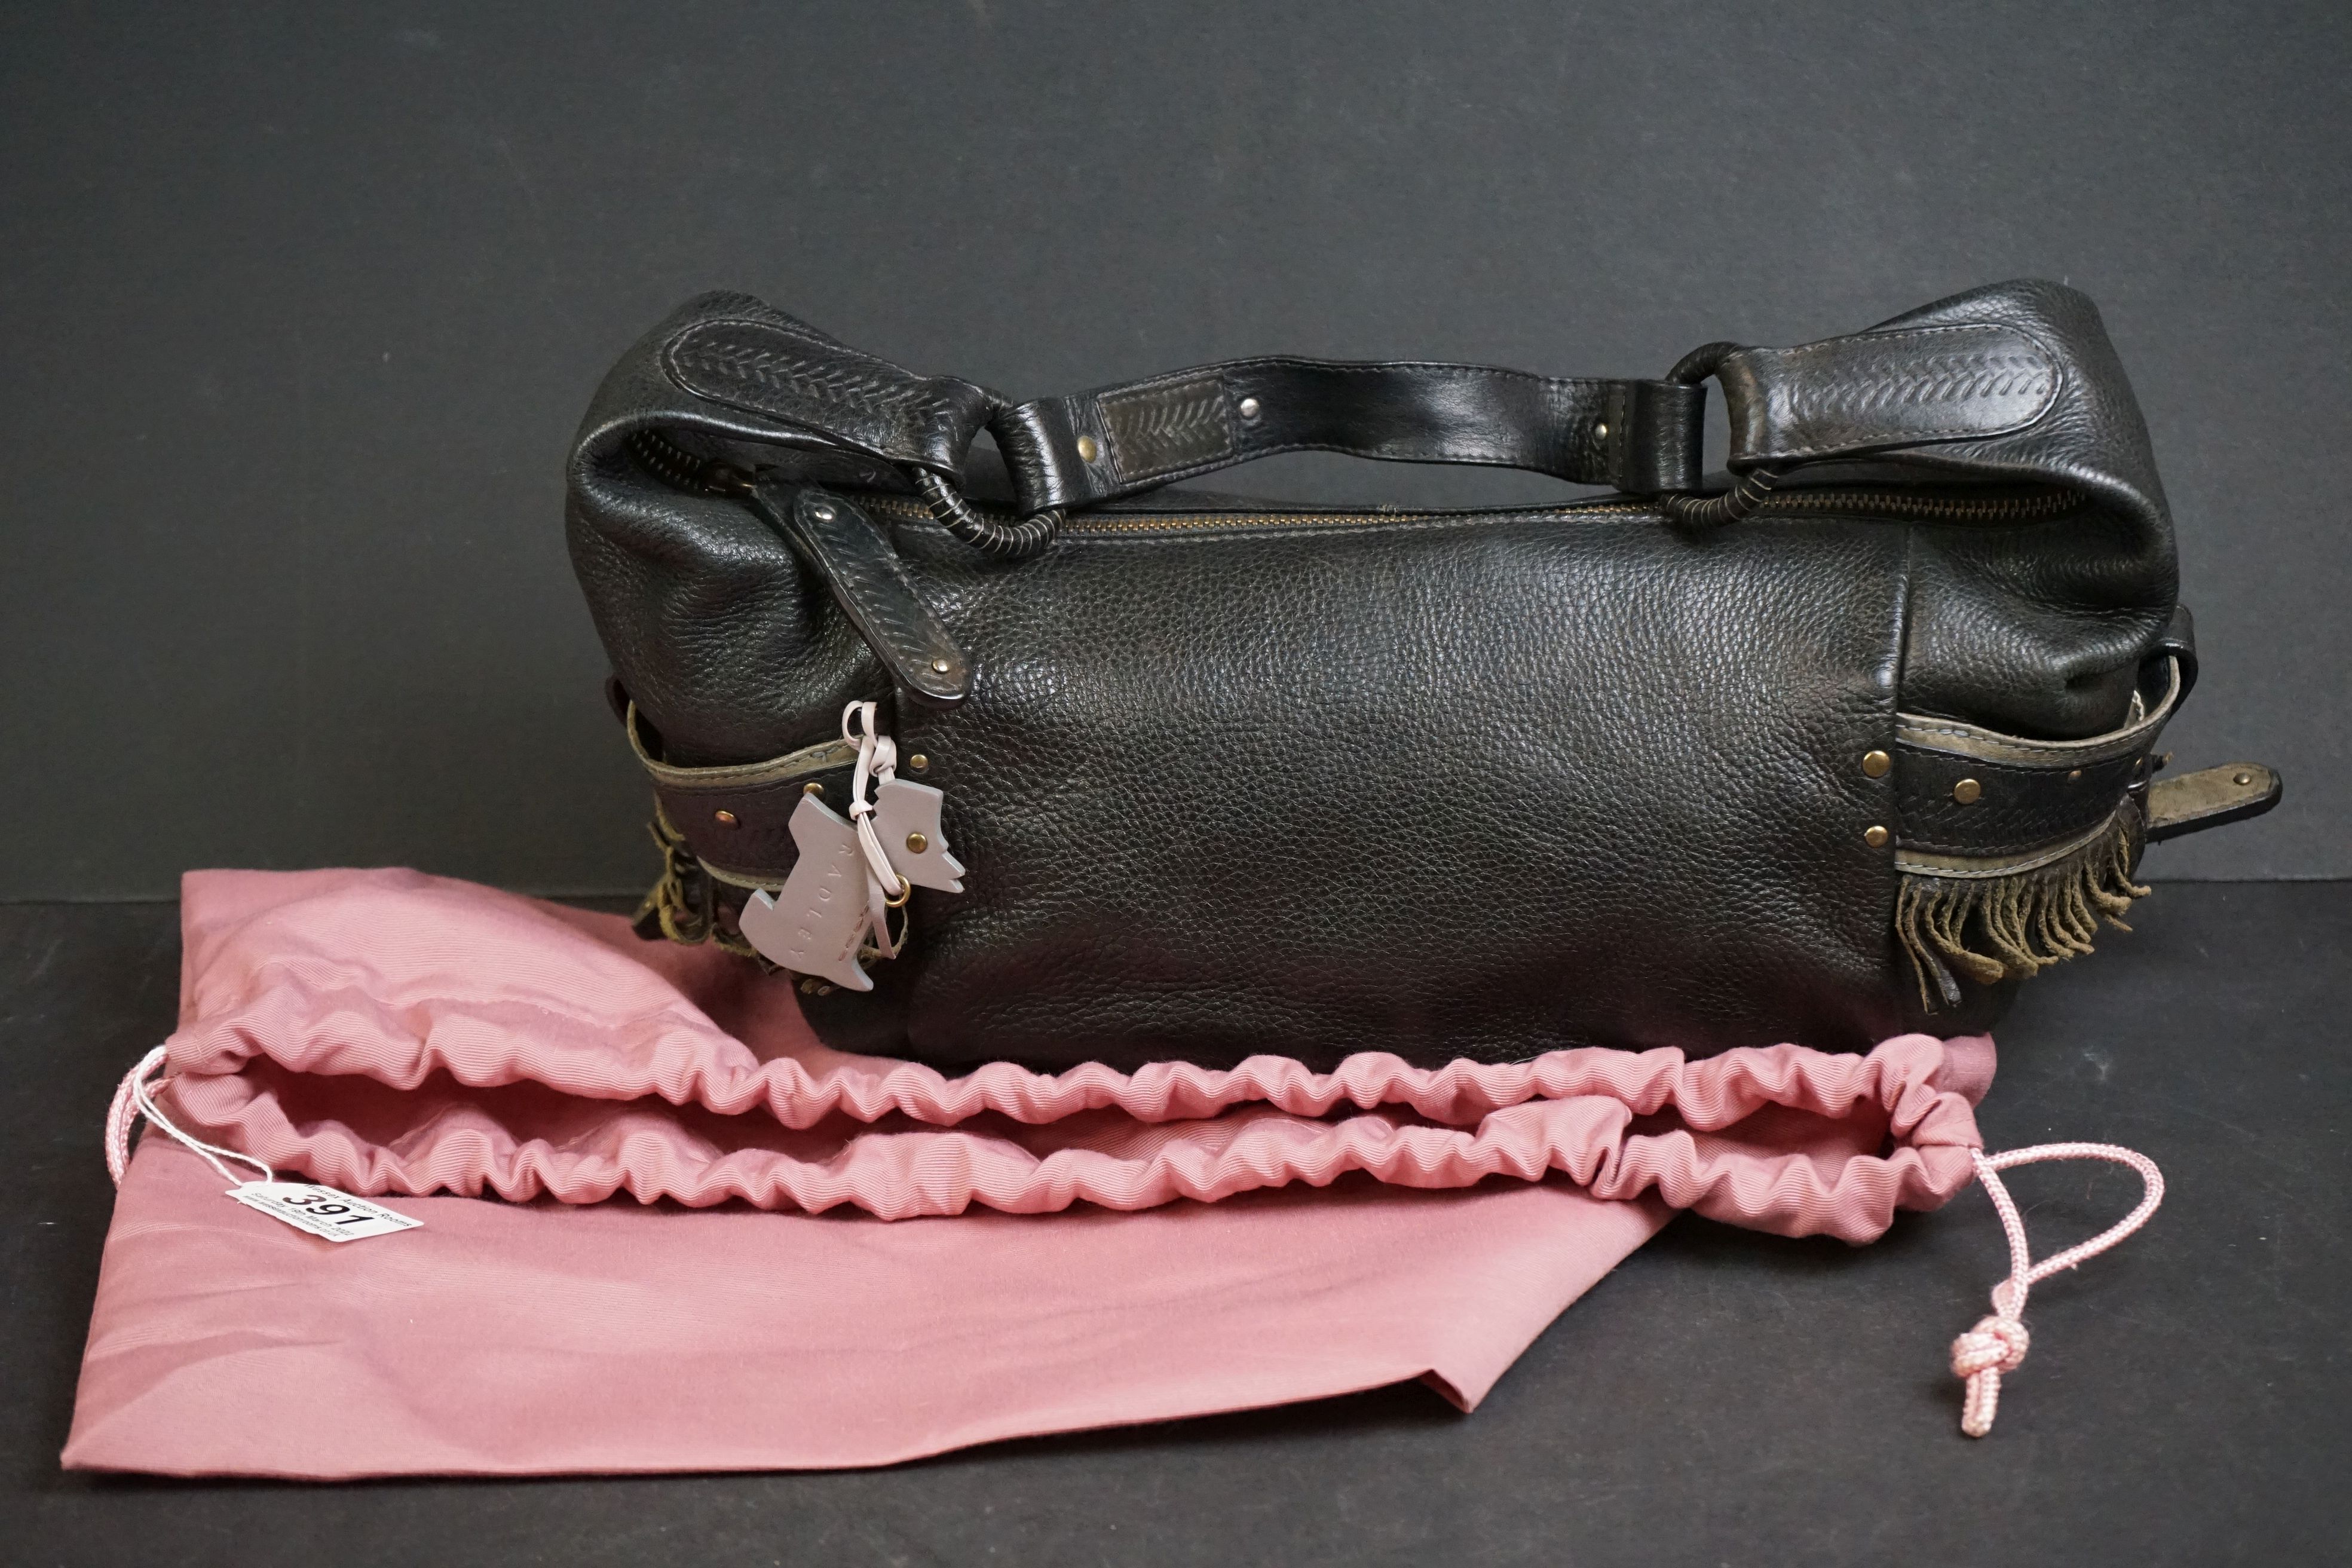 A black Radley handbag with fringed detail, grey Radley dog and pink dust bag.